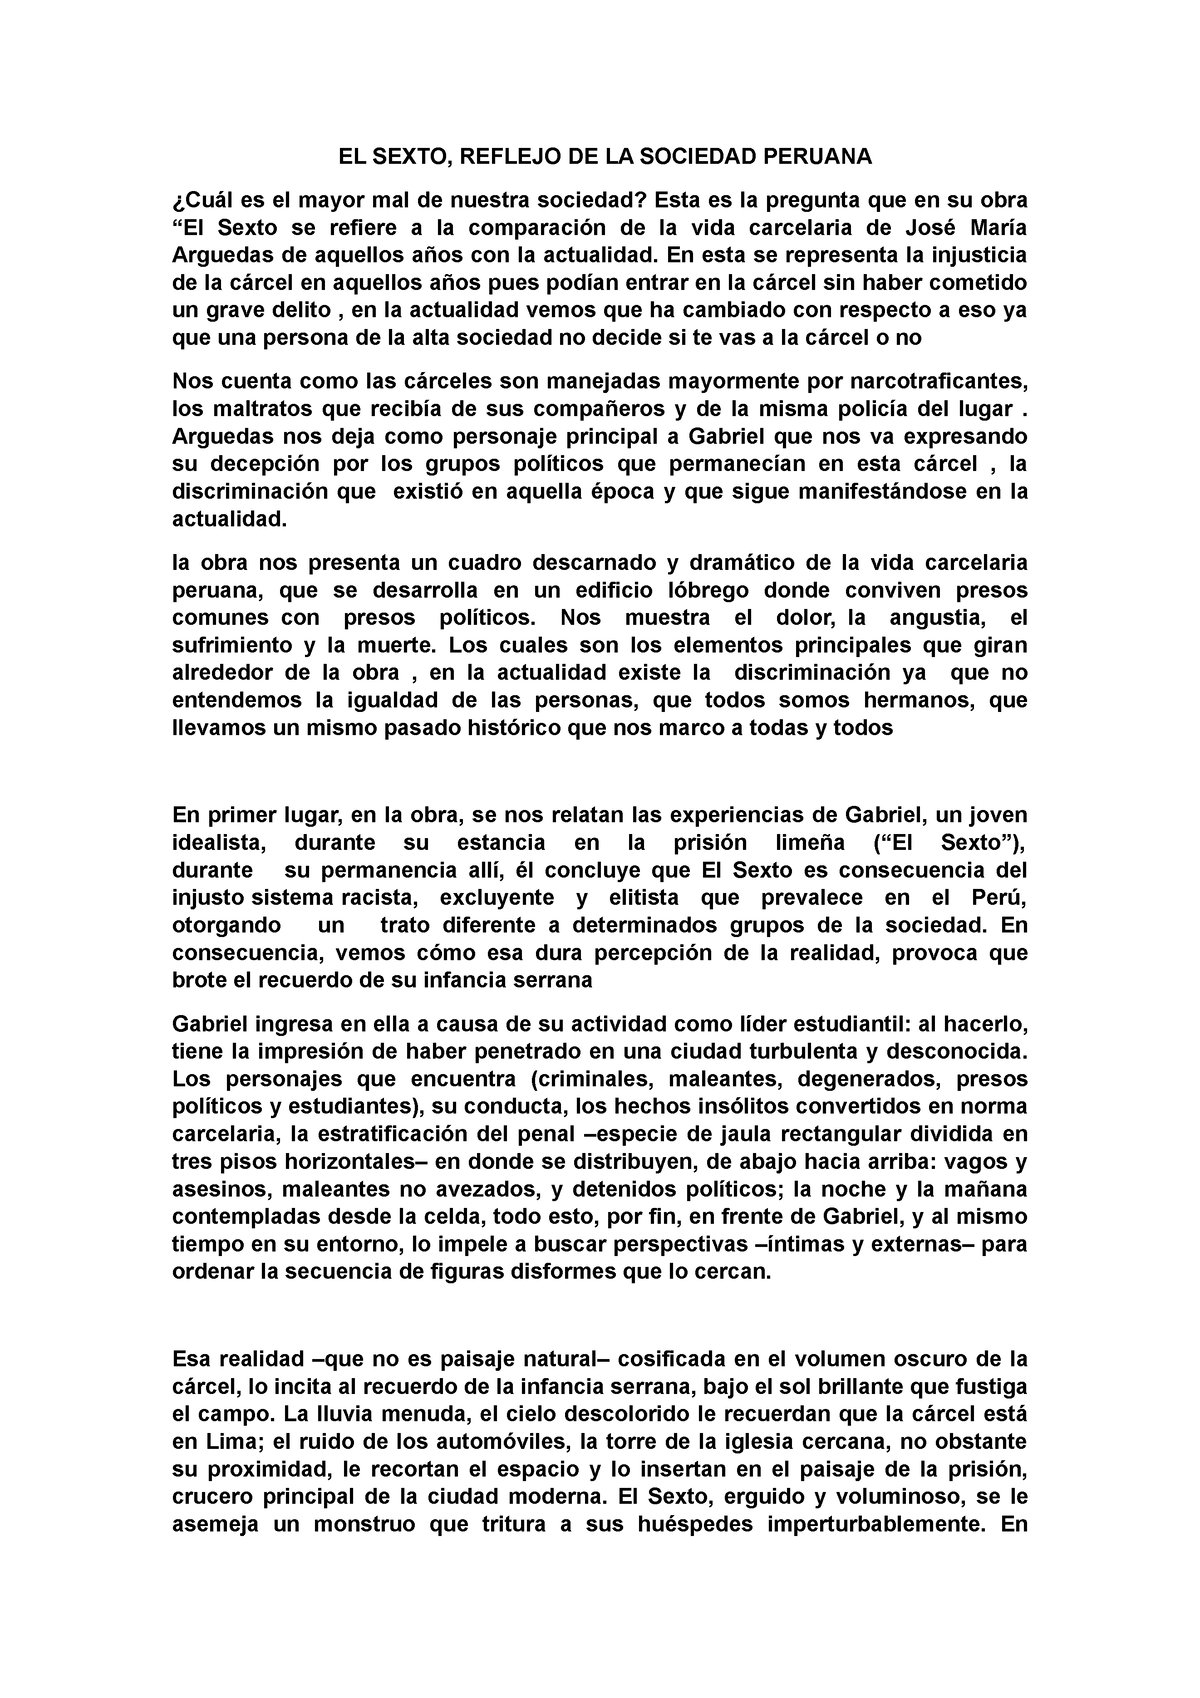 EL Sexto - ensayo - Lengua y Literatura III - I.S.F.D. Cacique Nicolás ...